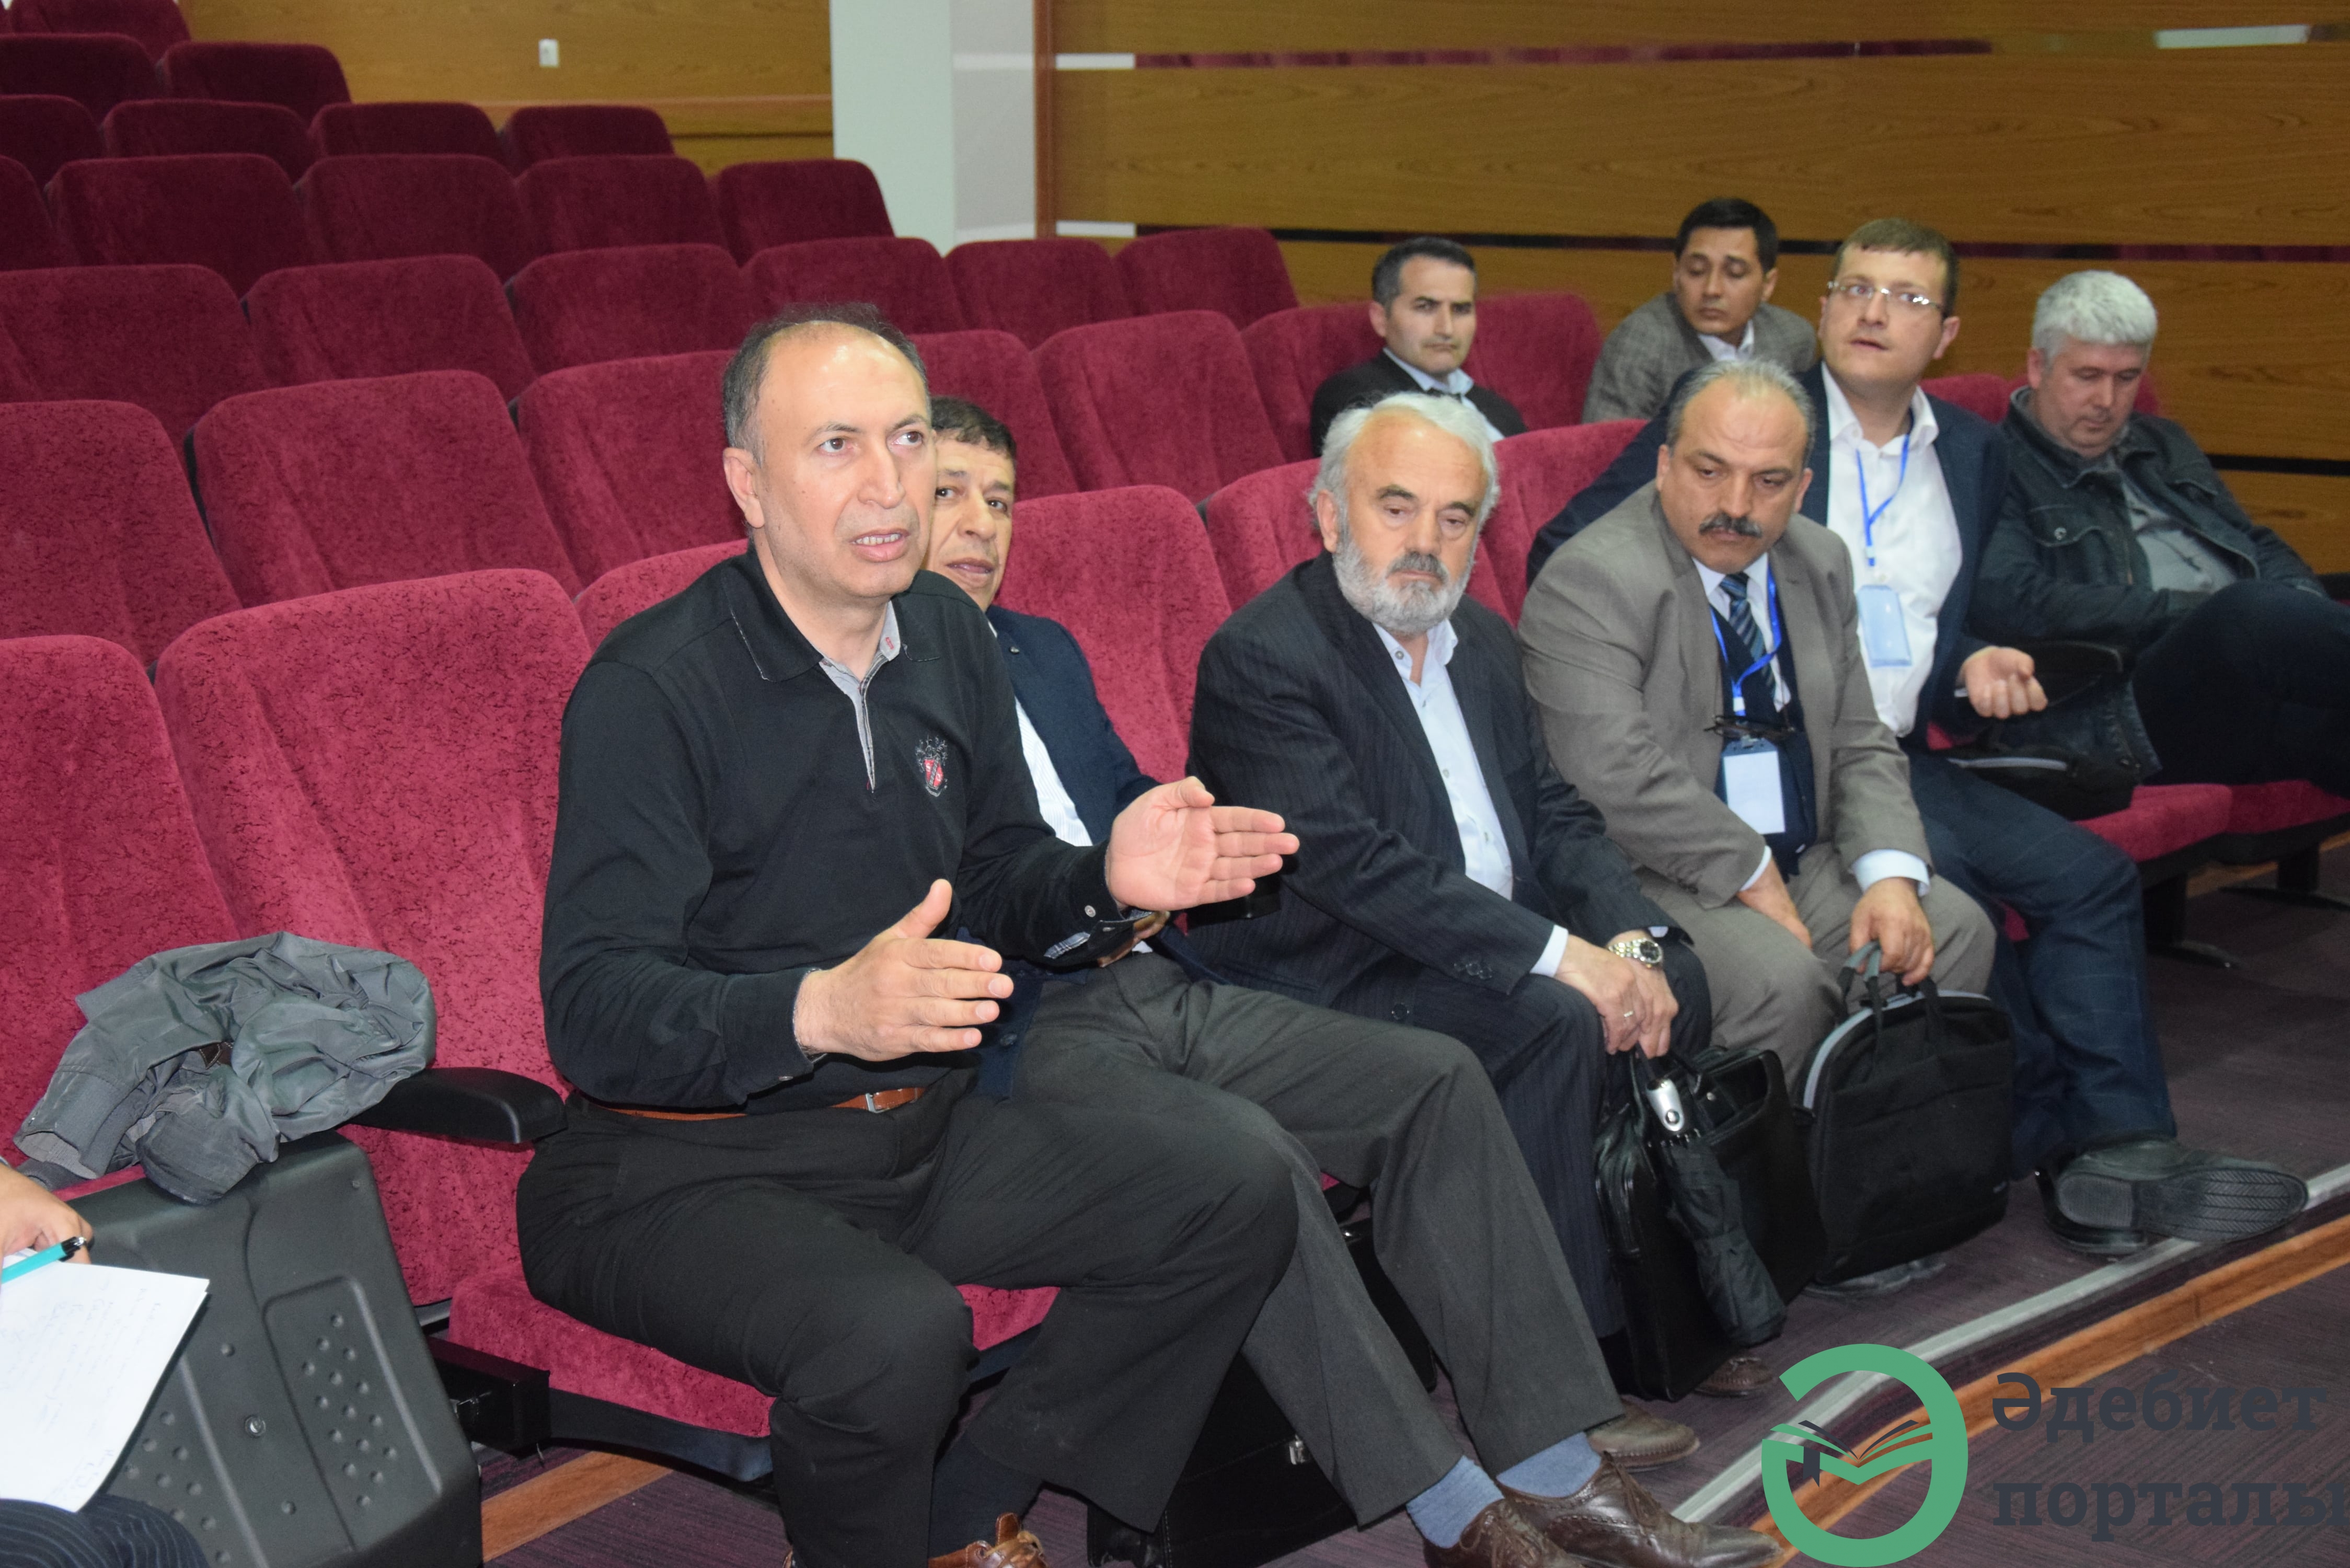 Халықаралық әлеуметтік ғылымдар конгресі: ІІІ Түркістан форумы  - фото 33 - adebiportal.kz